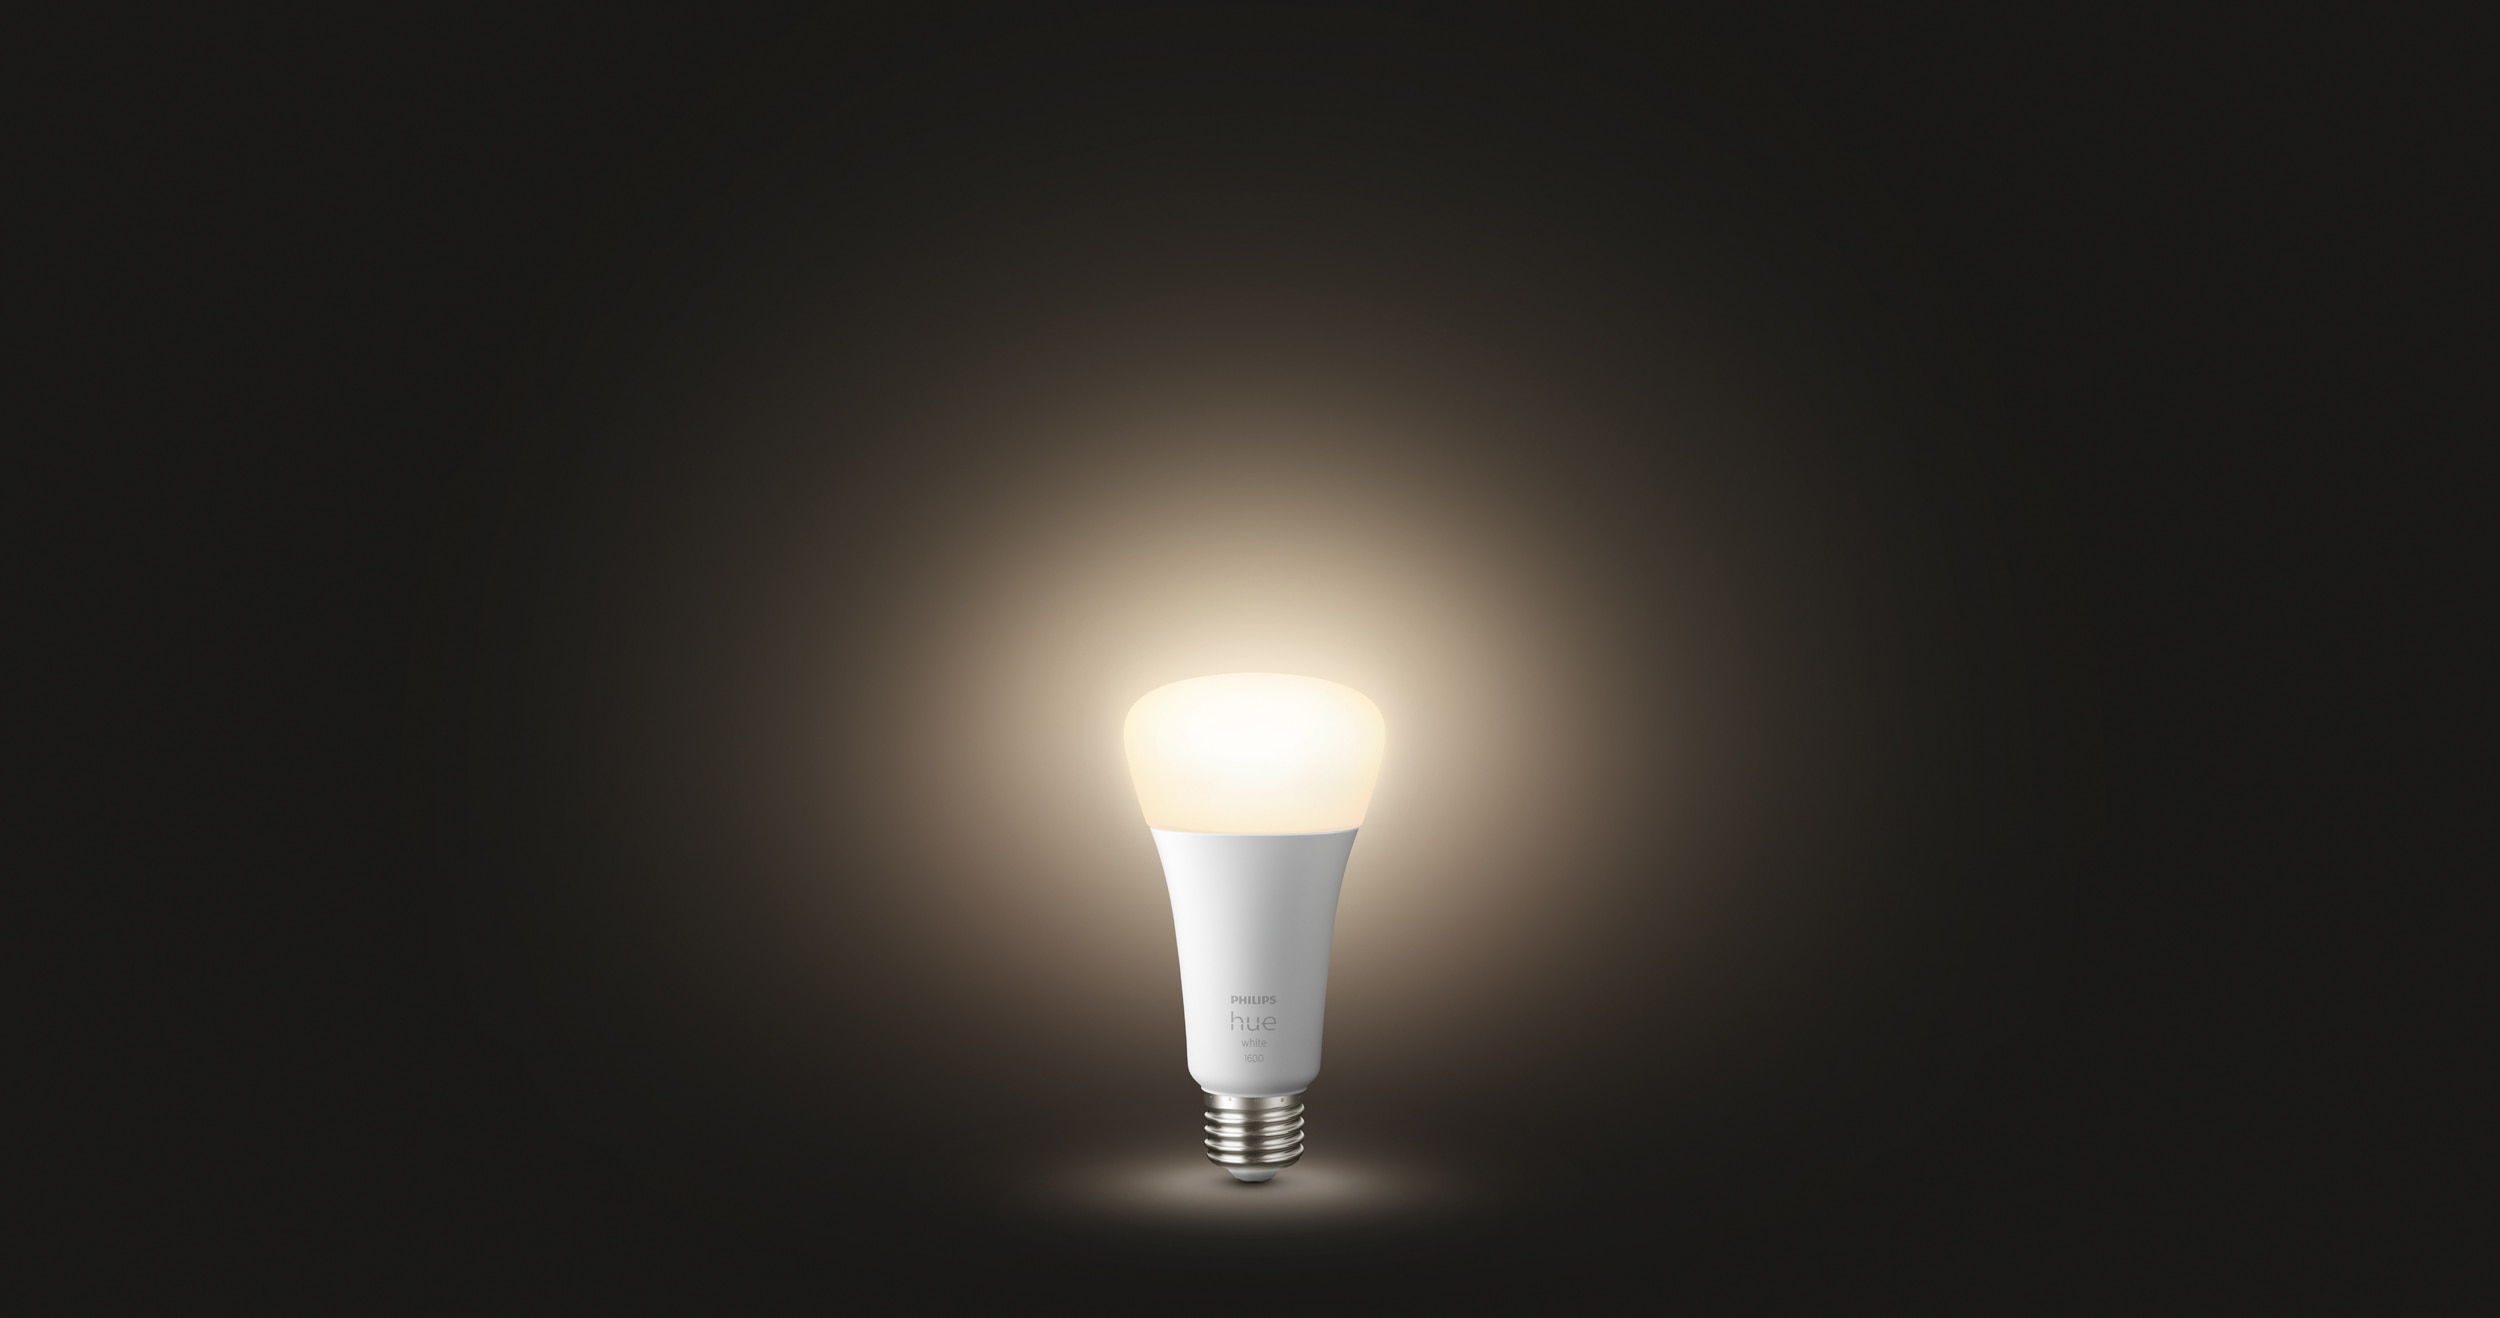 beetje Vooruitgang jury Philips Hue introduceert nieuwe en vernieuwde lampen en armaturen | Signify  bedrijfswebsite